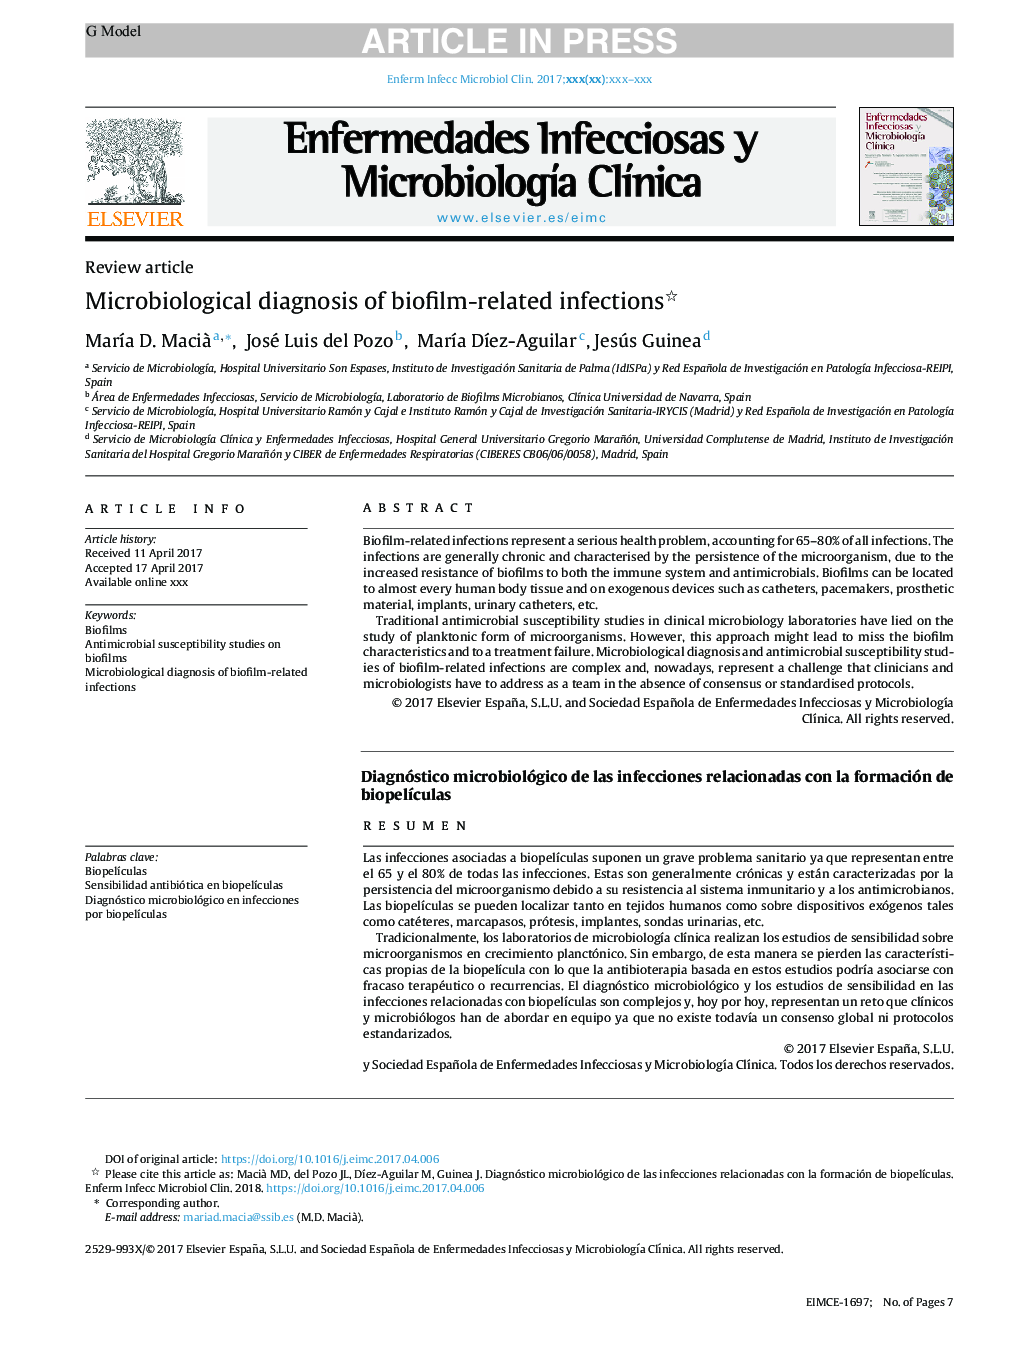 تشخیص میکروبیولوژیک عفونت های مرتبط با بیوفیلم